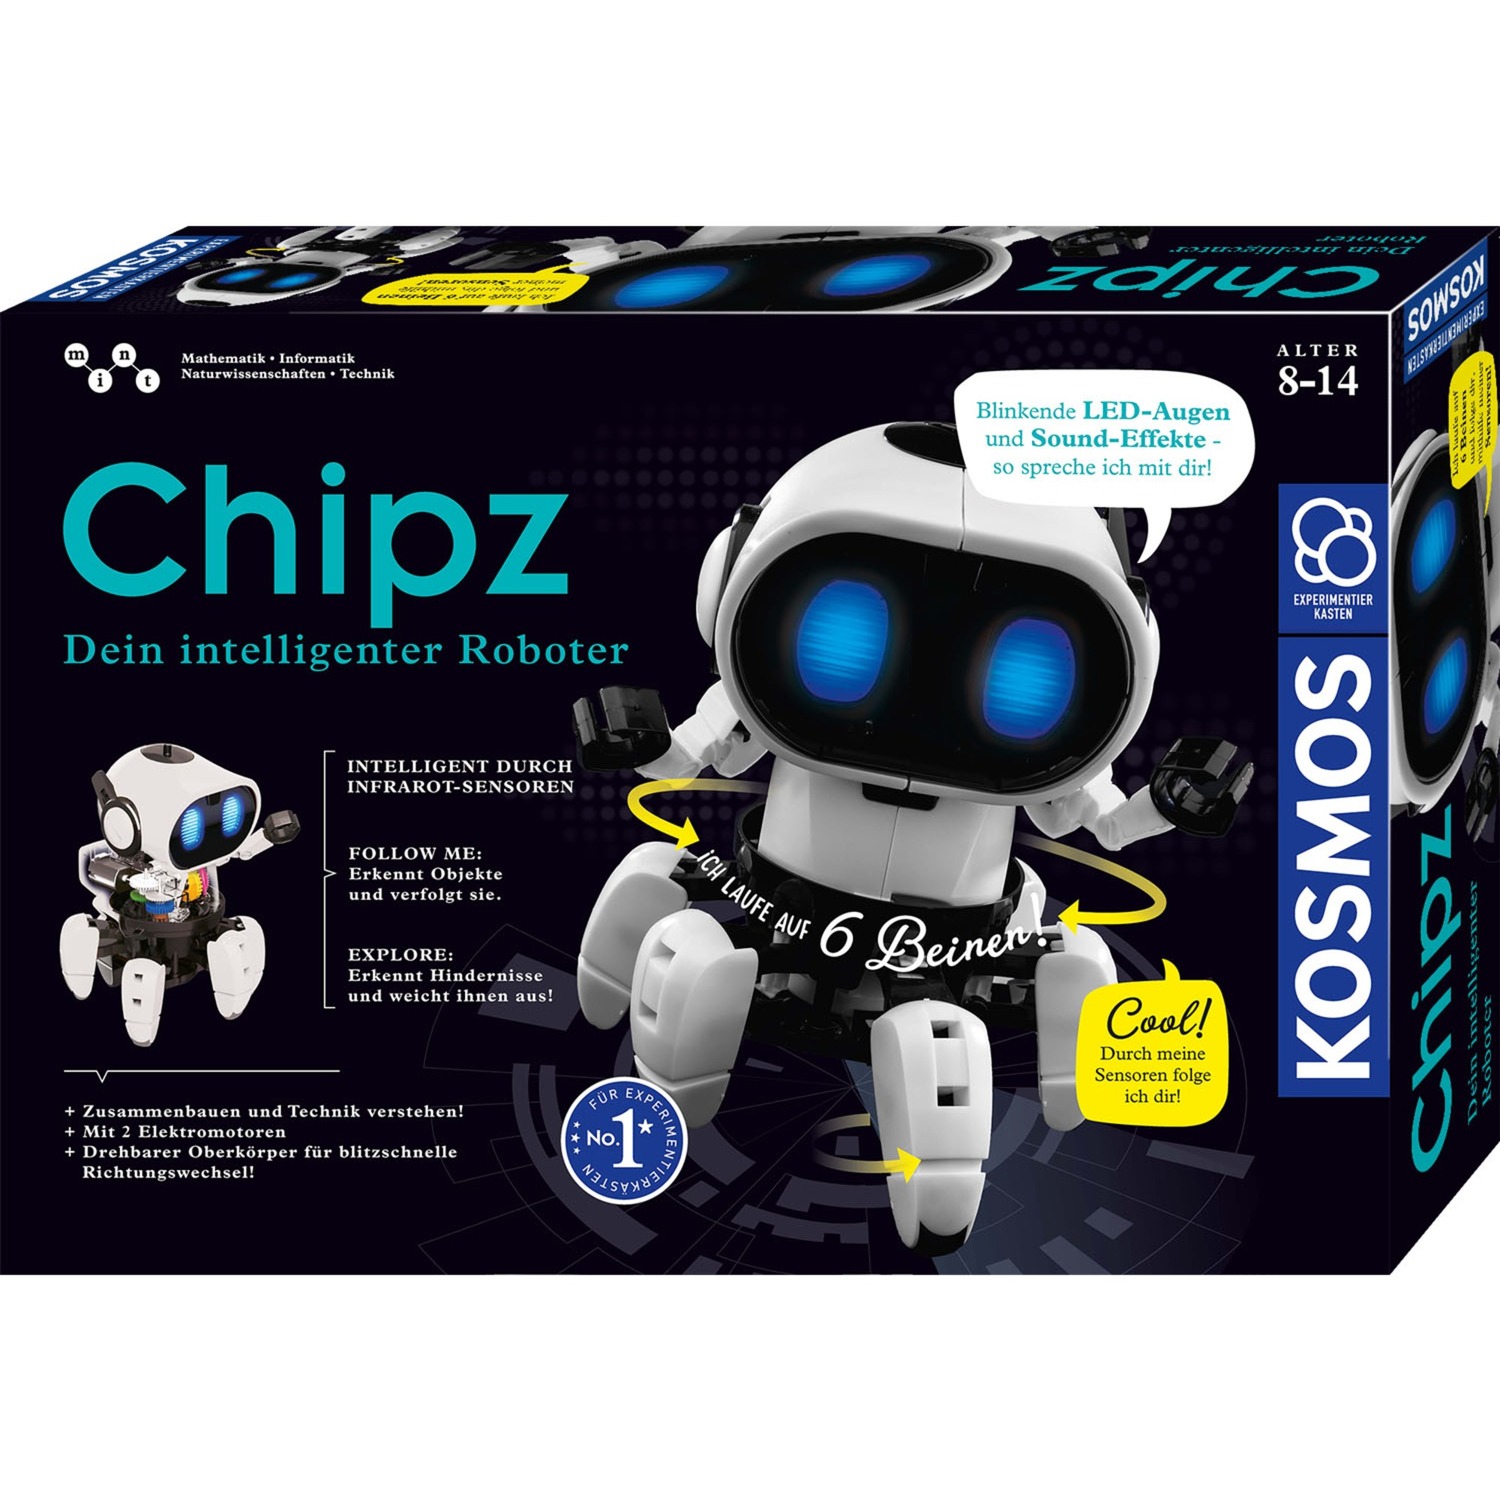 Image of Alternate - Chipz - Dein intelligenter Roboter, Experimentierkasten online einkaufen bei Alternate